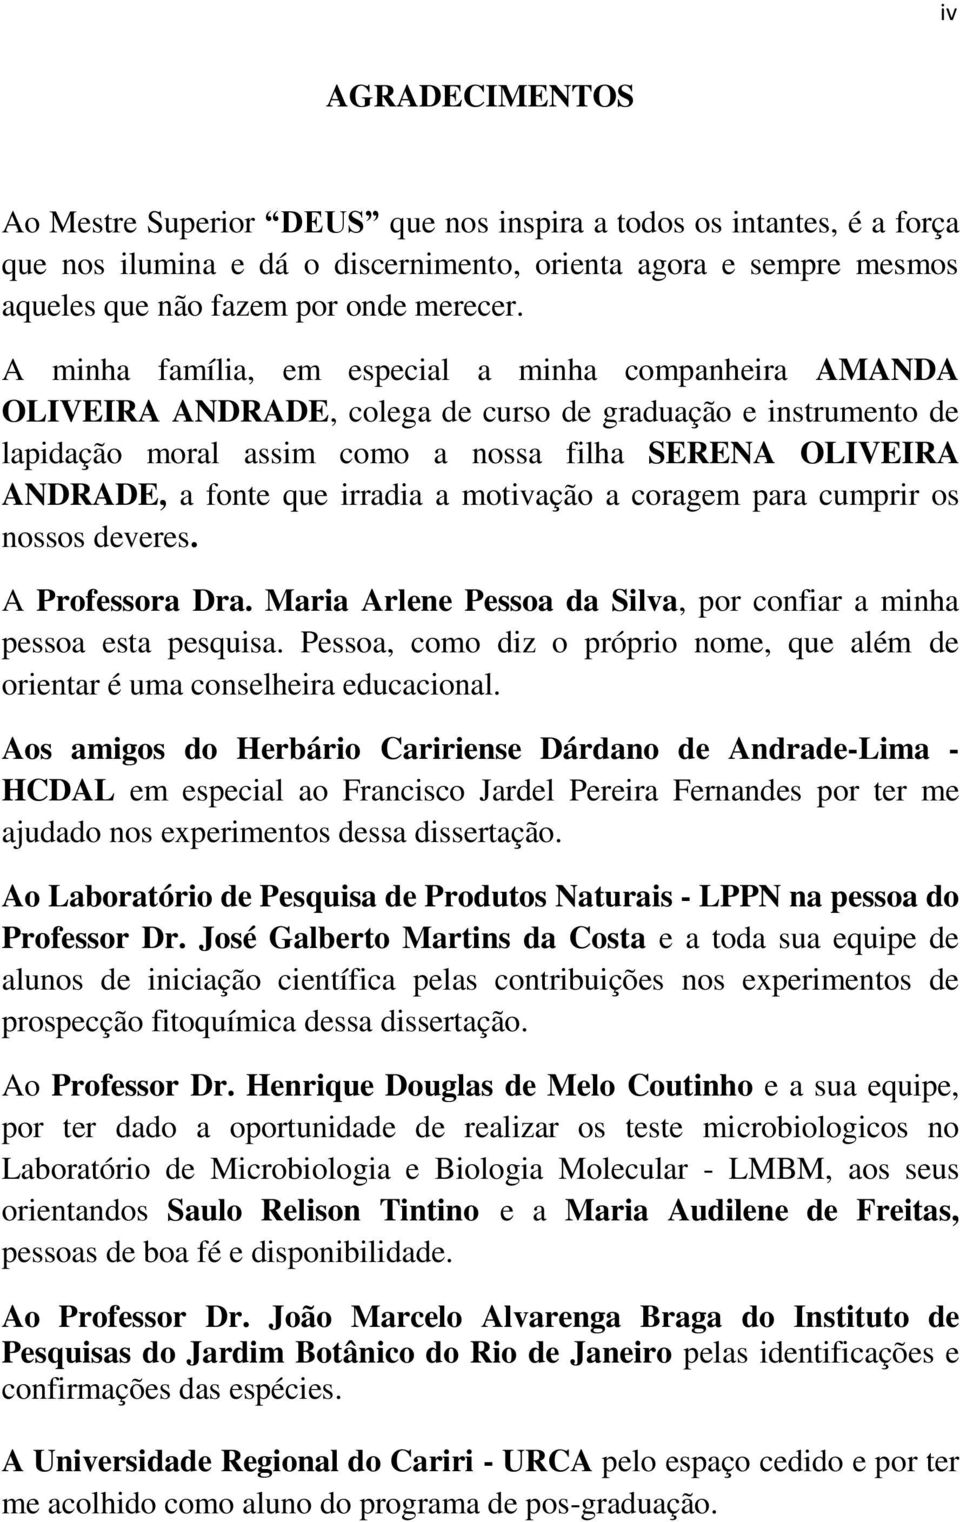 irradia a motivação a coragem para cumprir os nossos deveres. A Professora Dra. Maria Arlene Pessoa da Silva, por confiar a minha pessoa esta pesquisa.